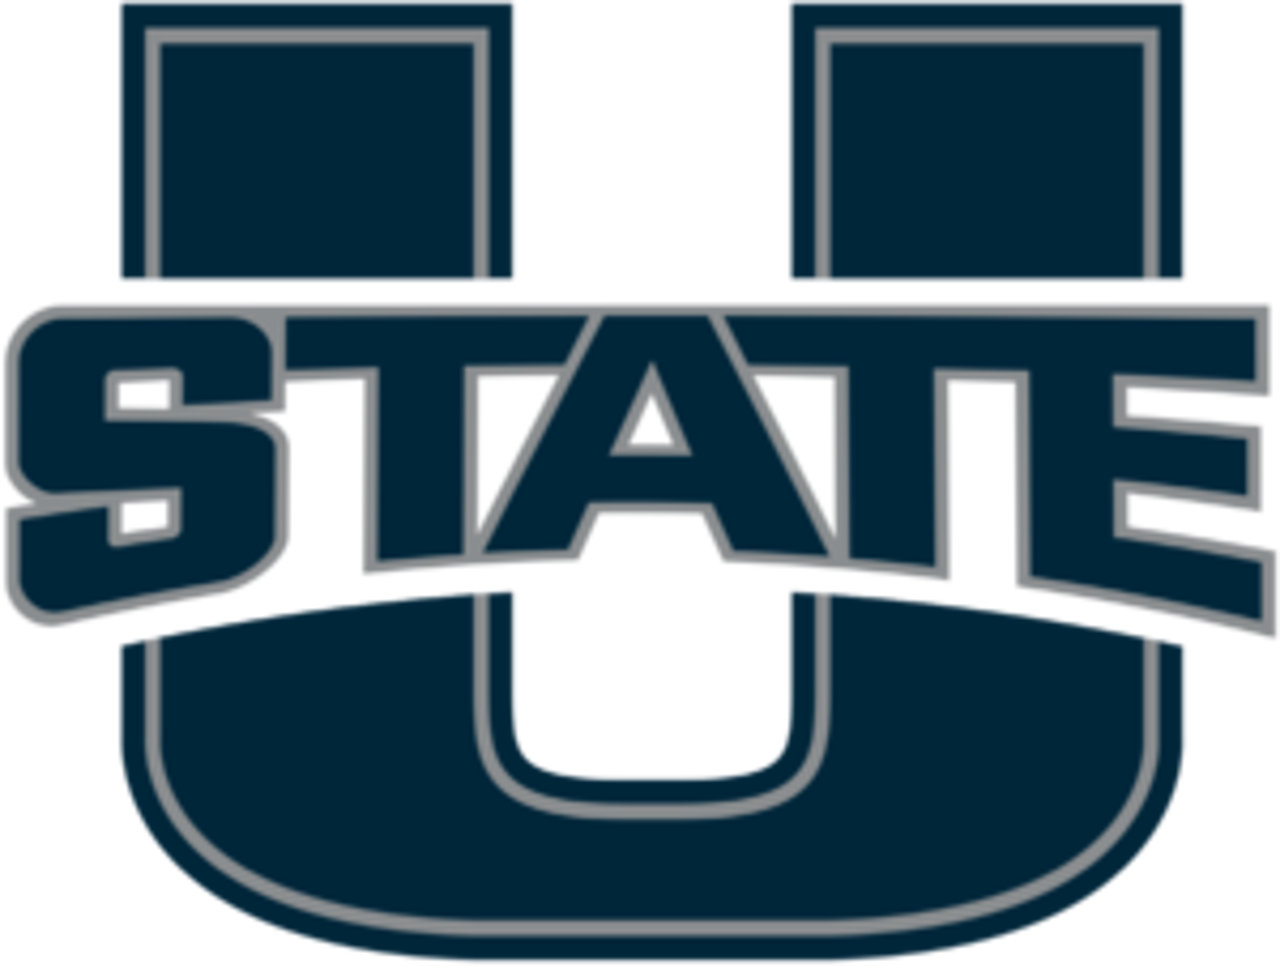 1200px-Utah_State_Aggies_logo.svg